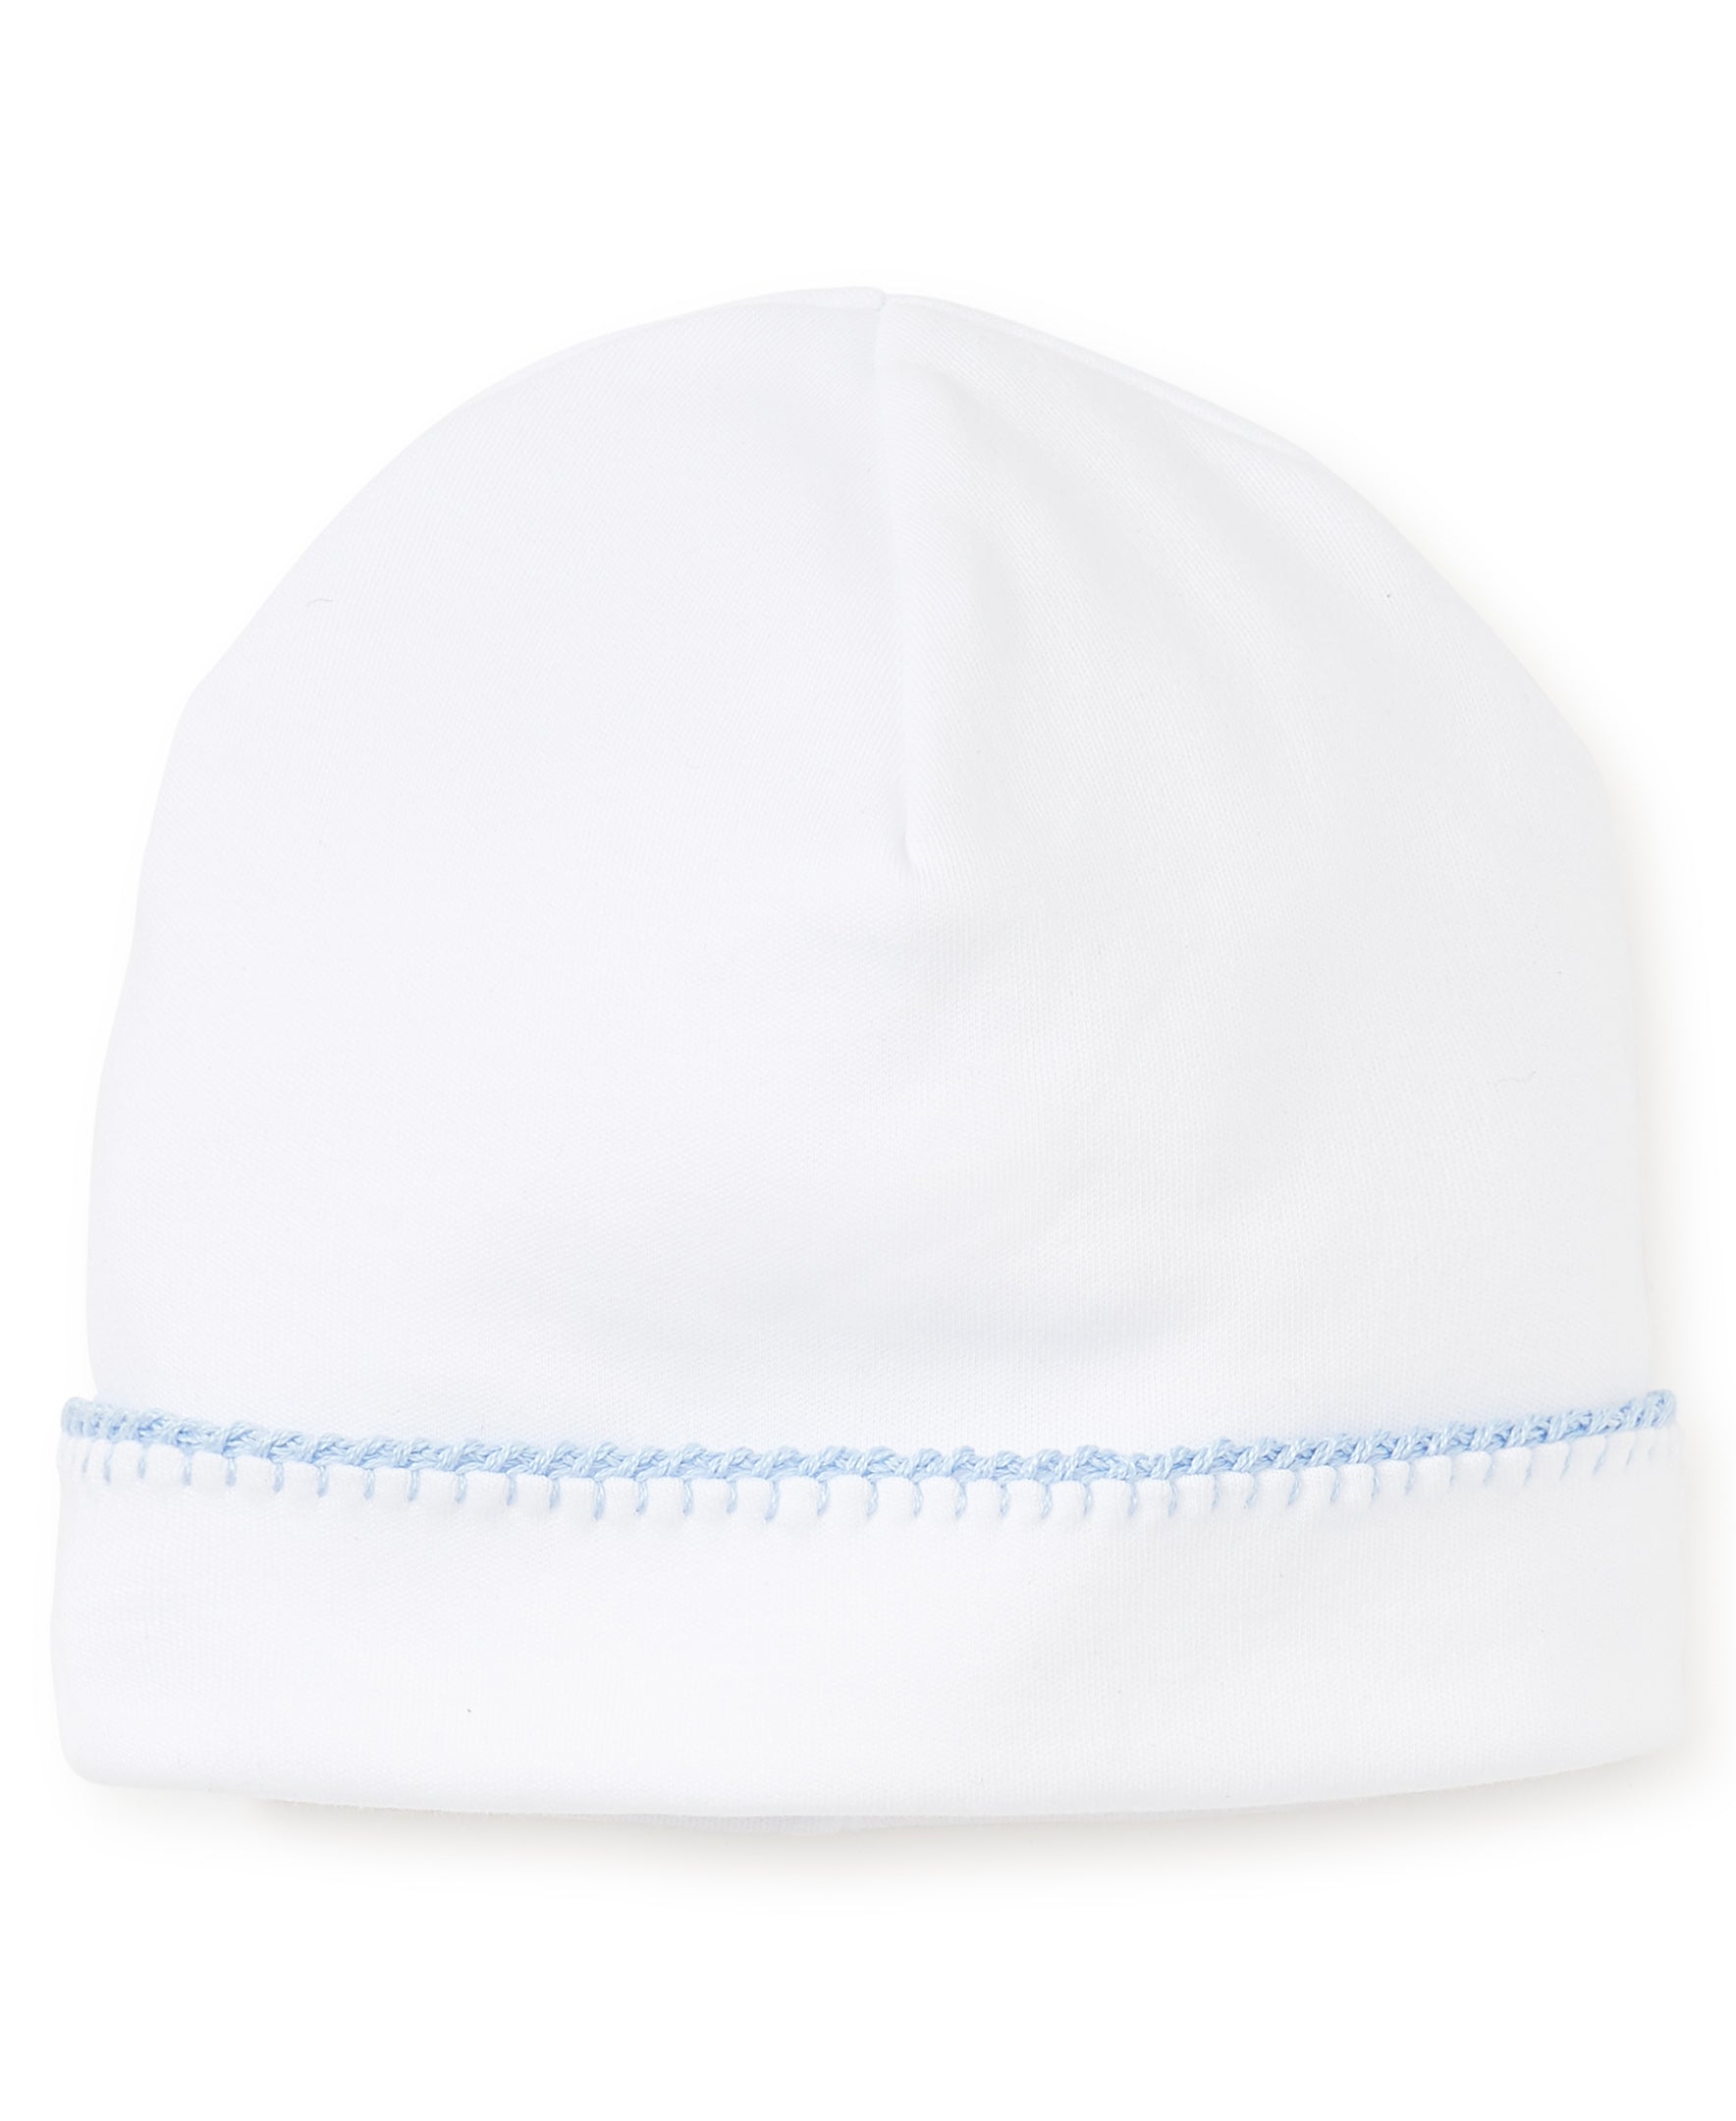 White/Blue New Premier Basics Hat - Kissy Kissy